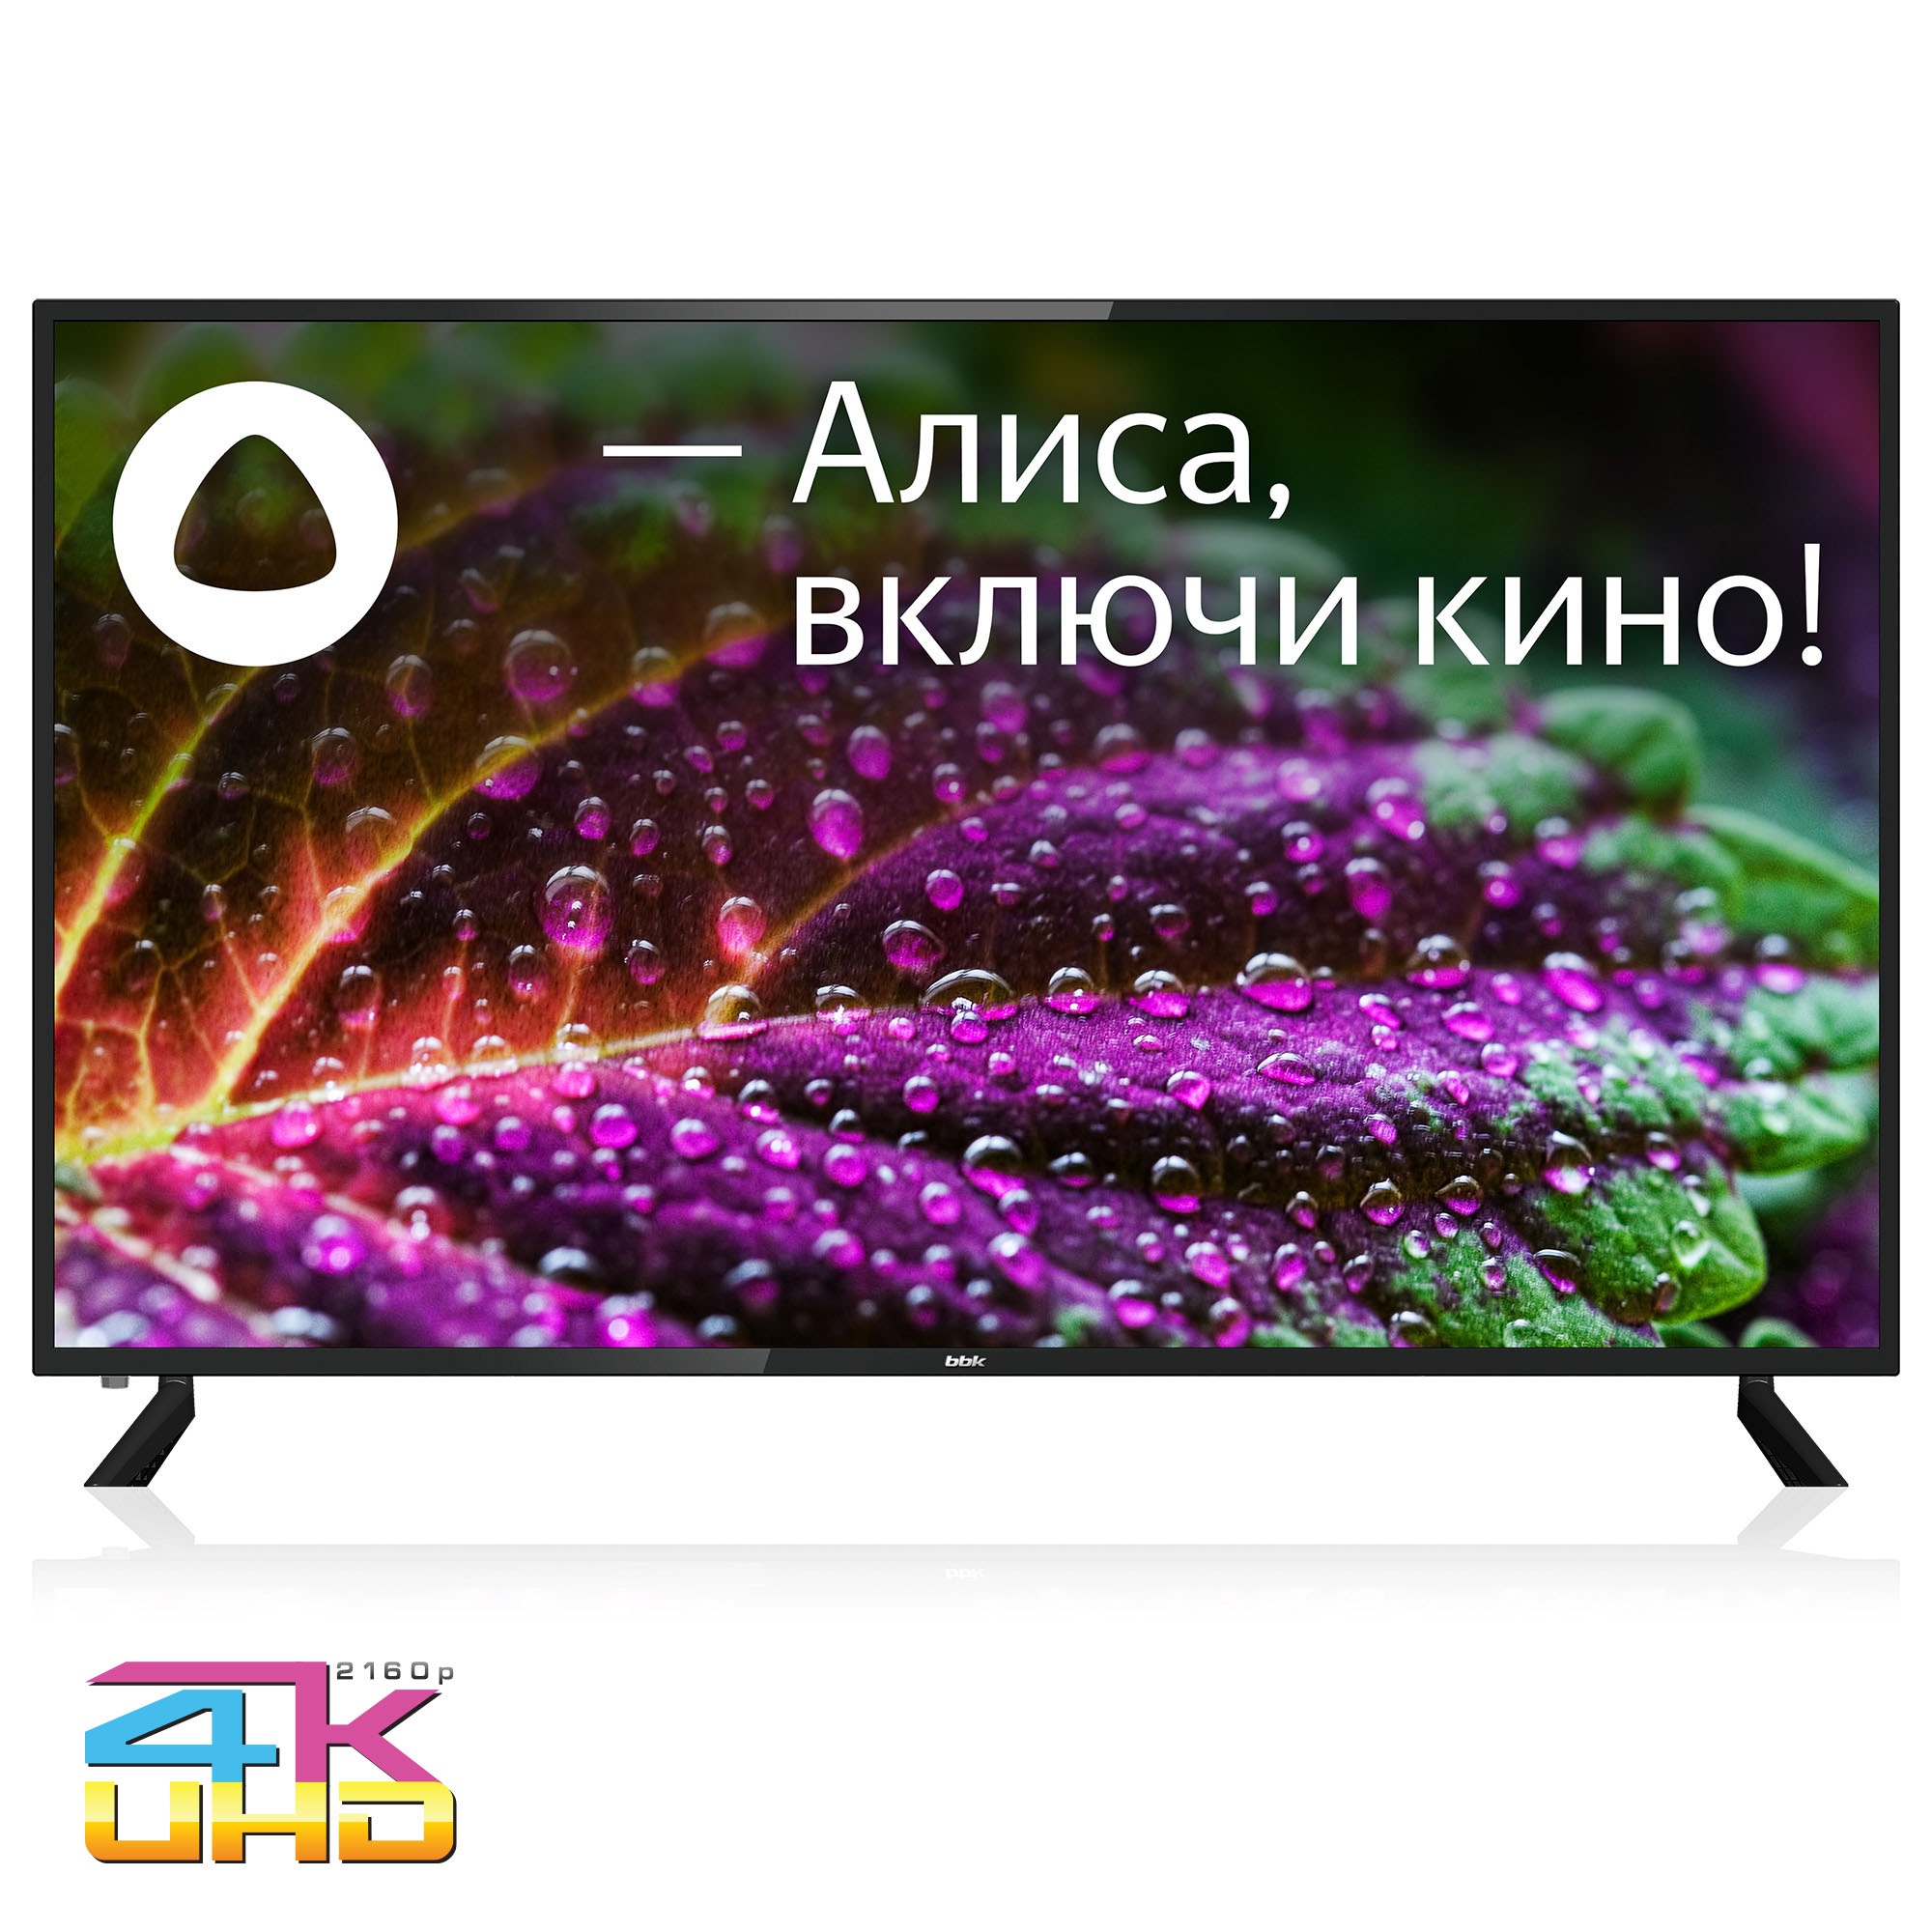 Телевизор BBK 65LED-9201/UTS2C Яндекс.ТВ черный телевизор led starwind 32 sw led32sg300 яндекс тв черный hd 60hz dvb t dvb t2 dvb c dvb s dvb s2 usb wifi smart tv